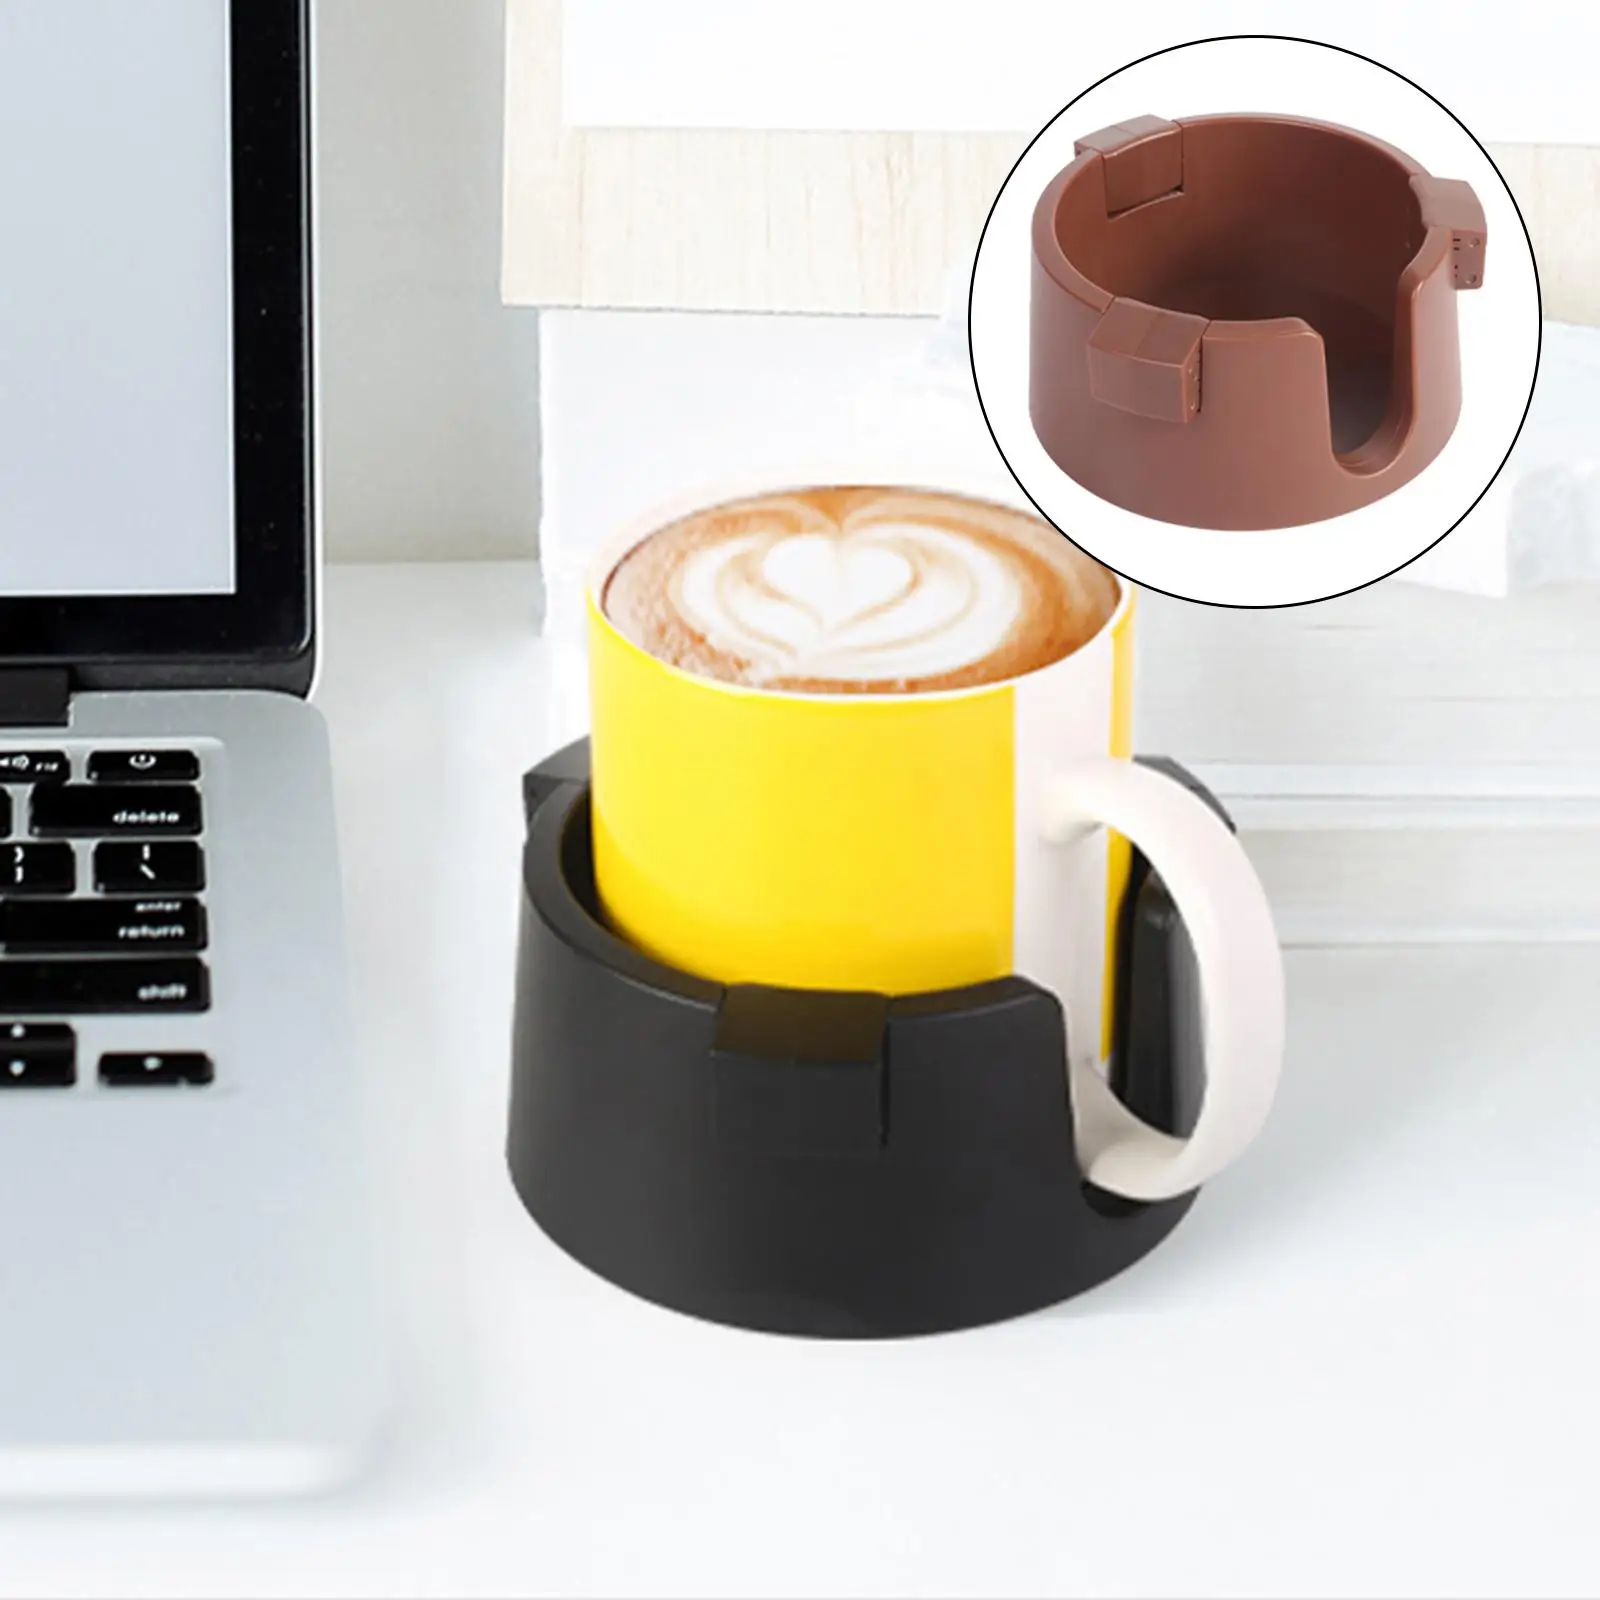 Anti Spill Drink Holder Kitchen Tools Multifunction Beverage Holder Drink Coaster for Home Office Desktop Bedside Table Dorms